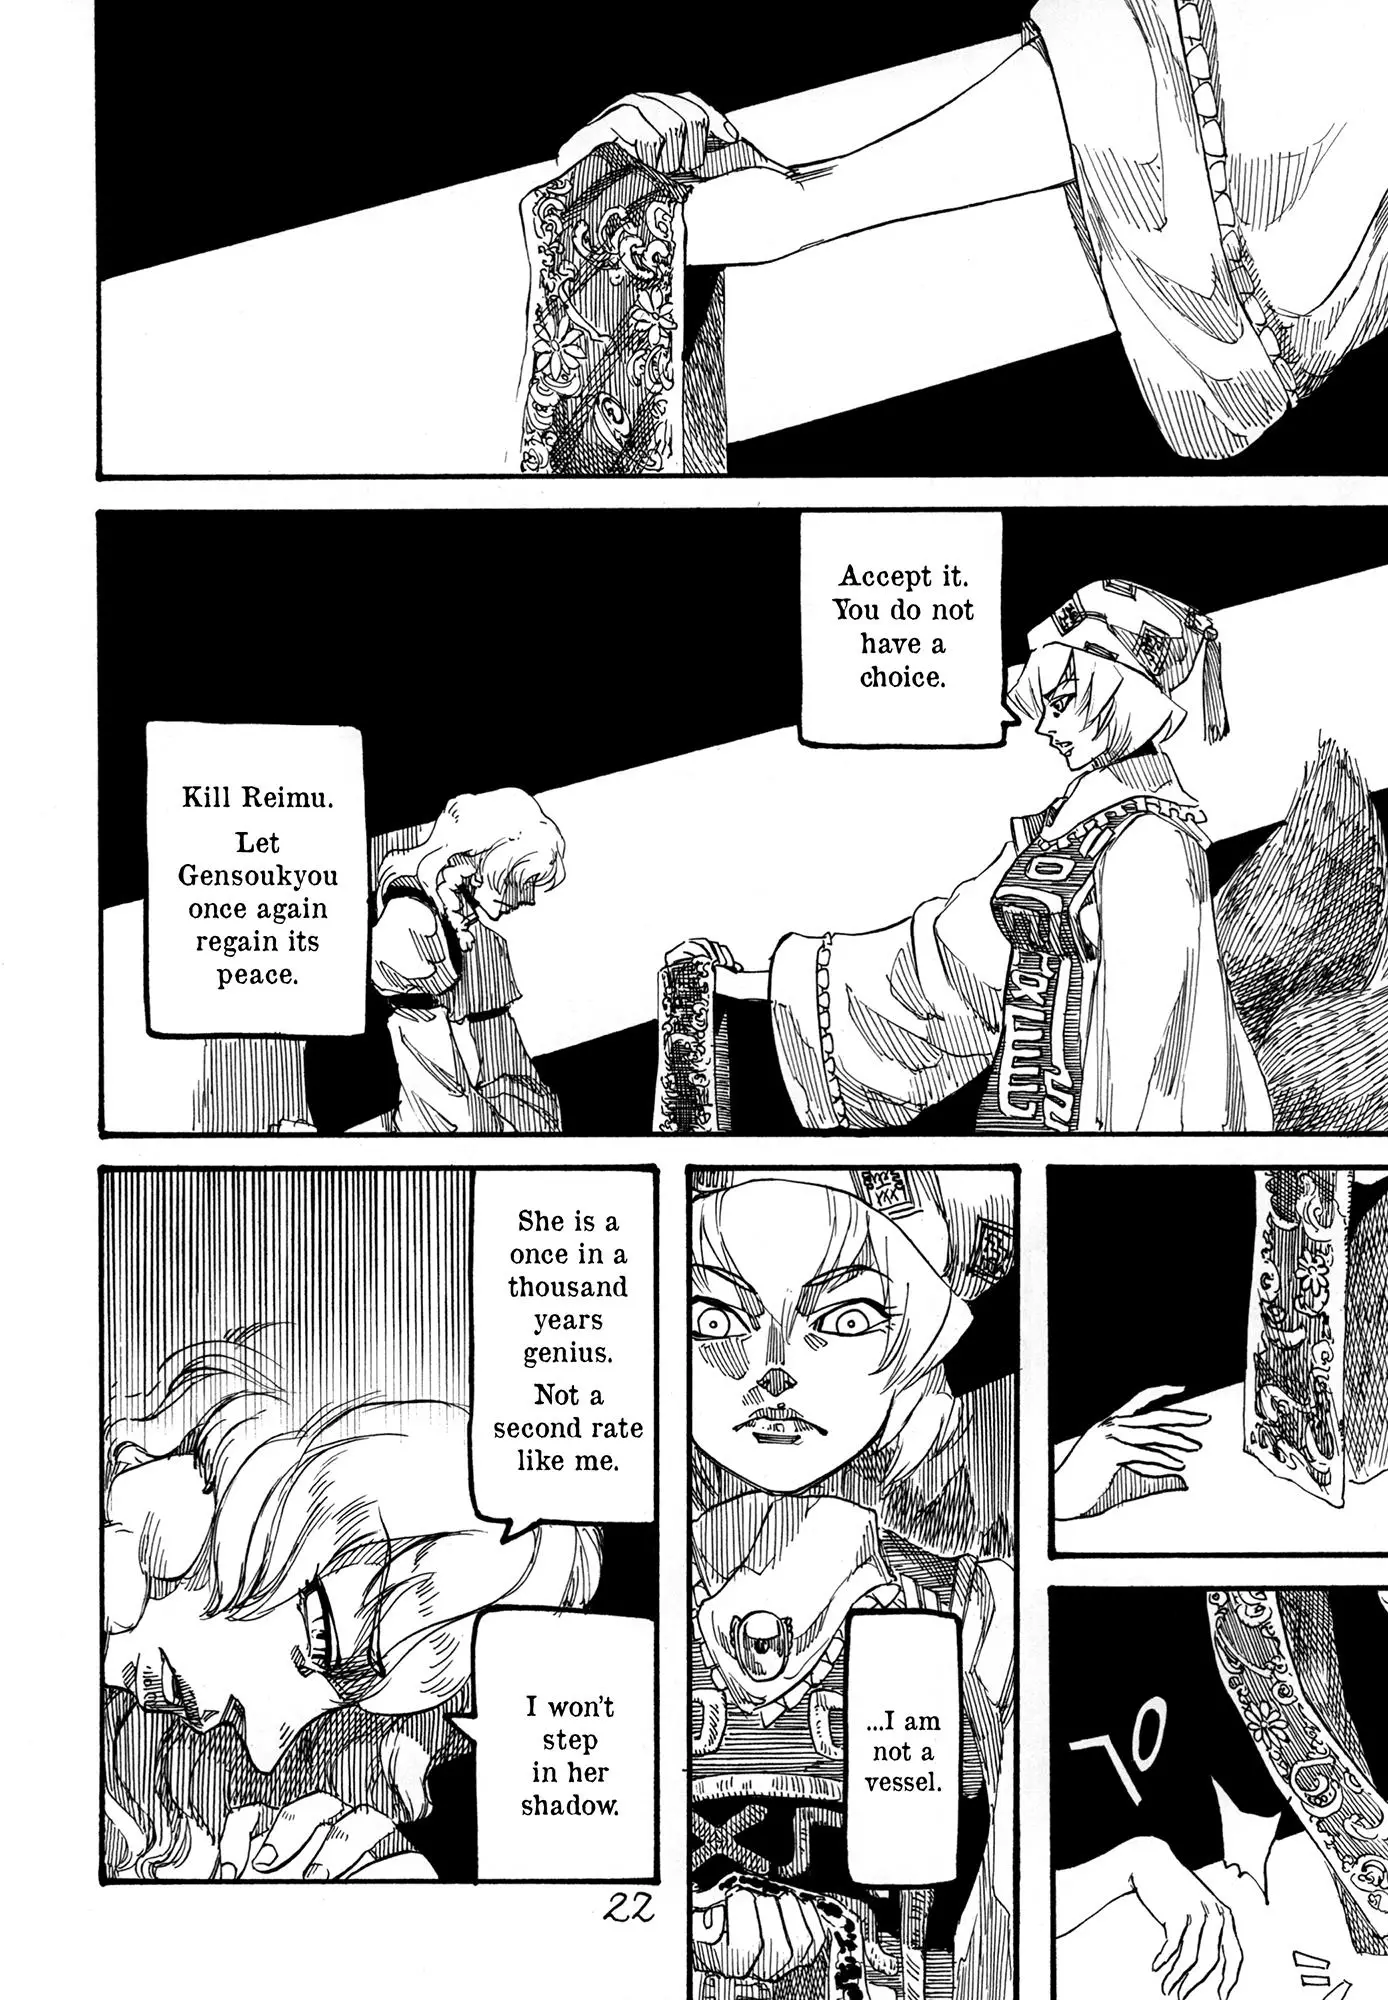 Touhou - Rainmaker (Doujinshi) - 4 page 23-10b0de36